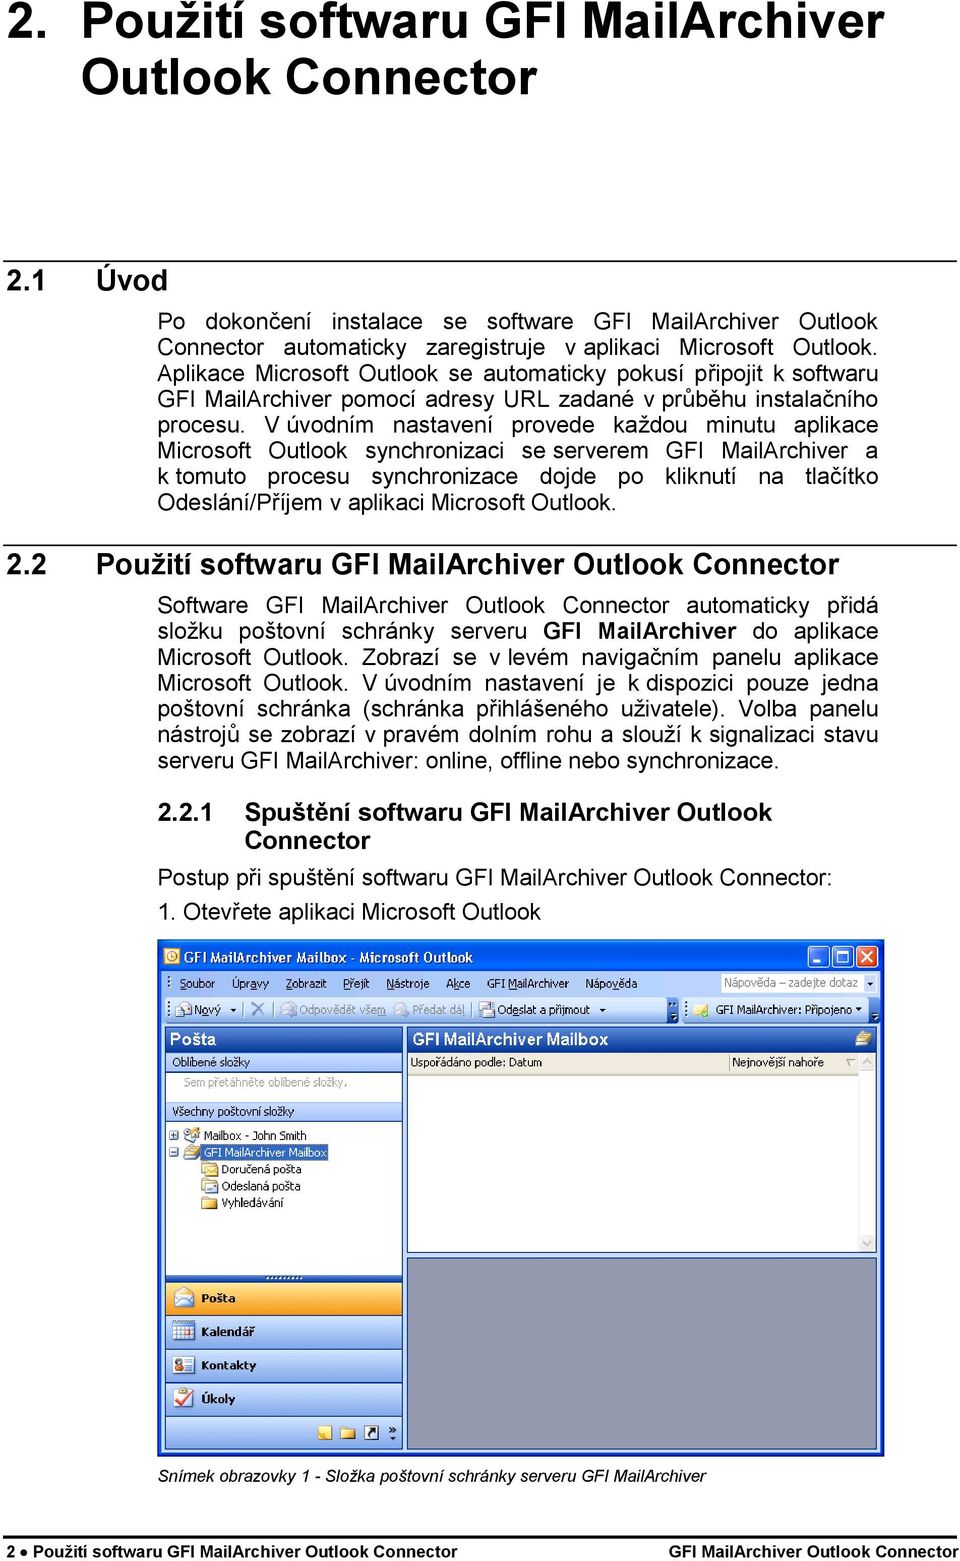 V úvodním nastavení provede každou minutu aplikace Microsoft Outlook synchronizaci se serverem GFI MailArchiver a k tomuto procesu synchronizace dojde po kliknutí na tlačítko Odeslání/Příjem v